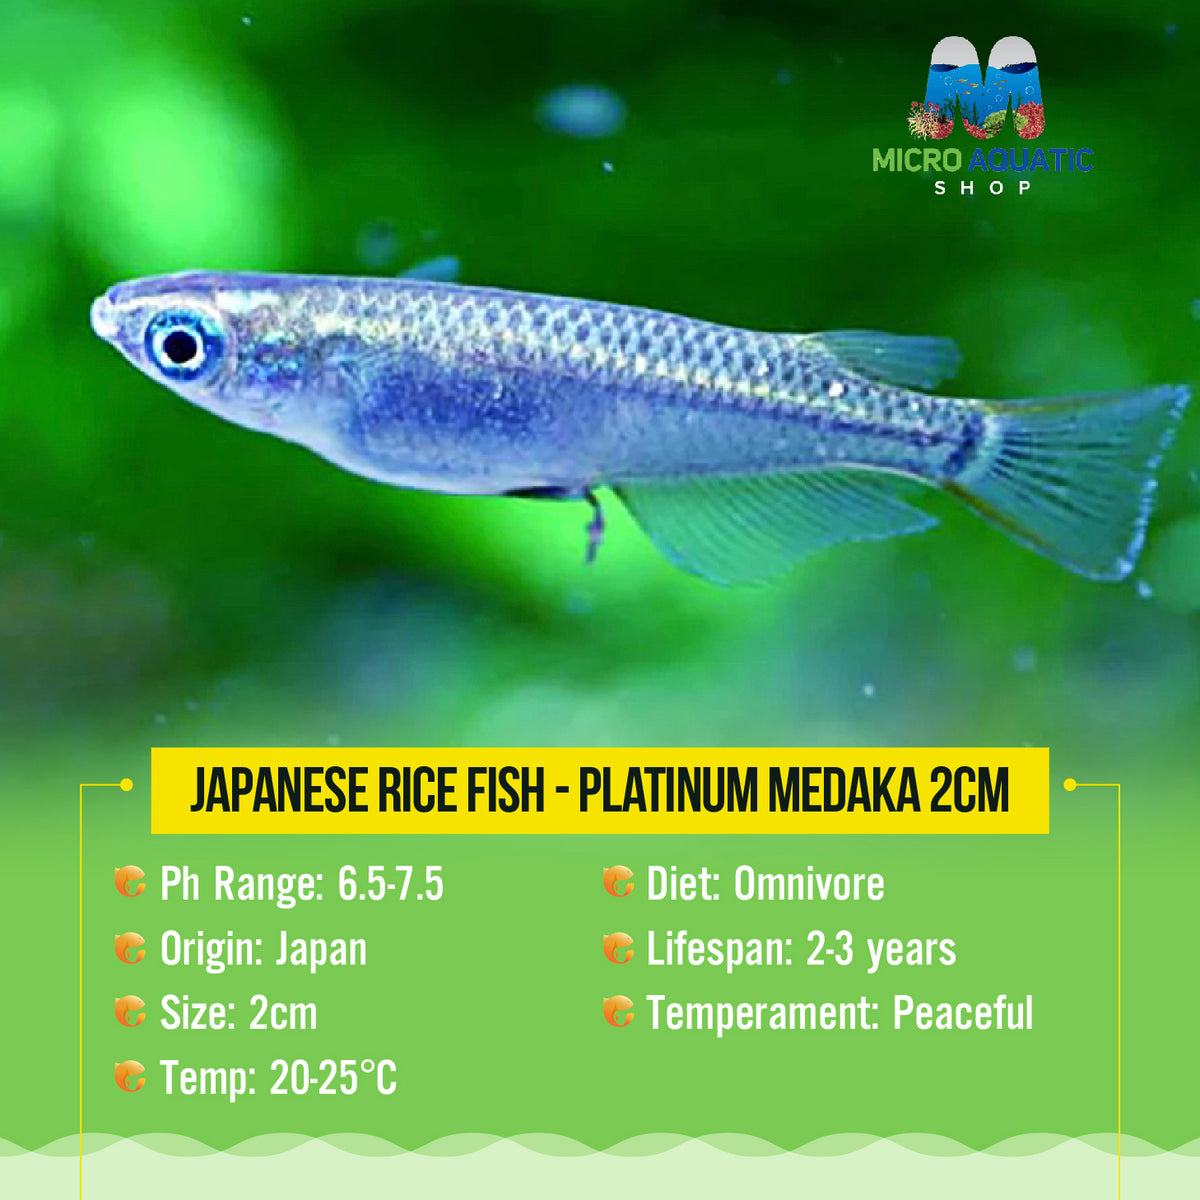 Japanese rice fish - Platinum Medaka 2cm